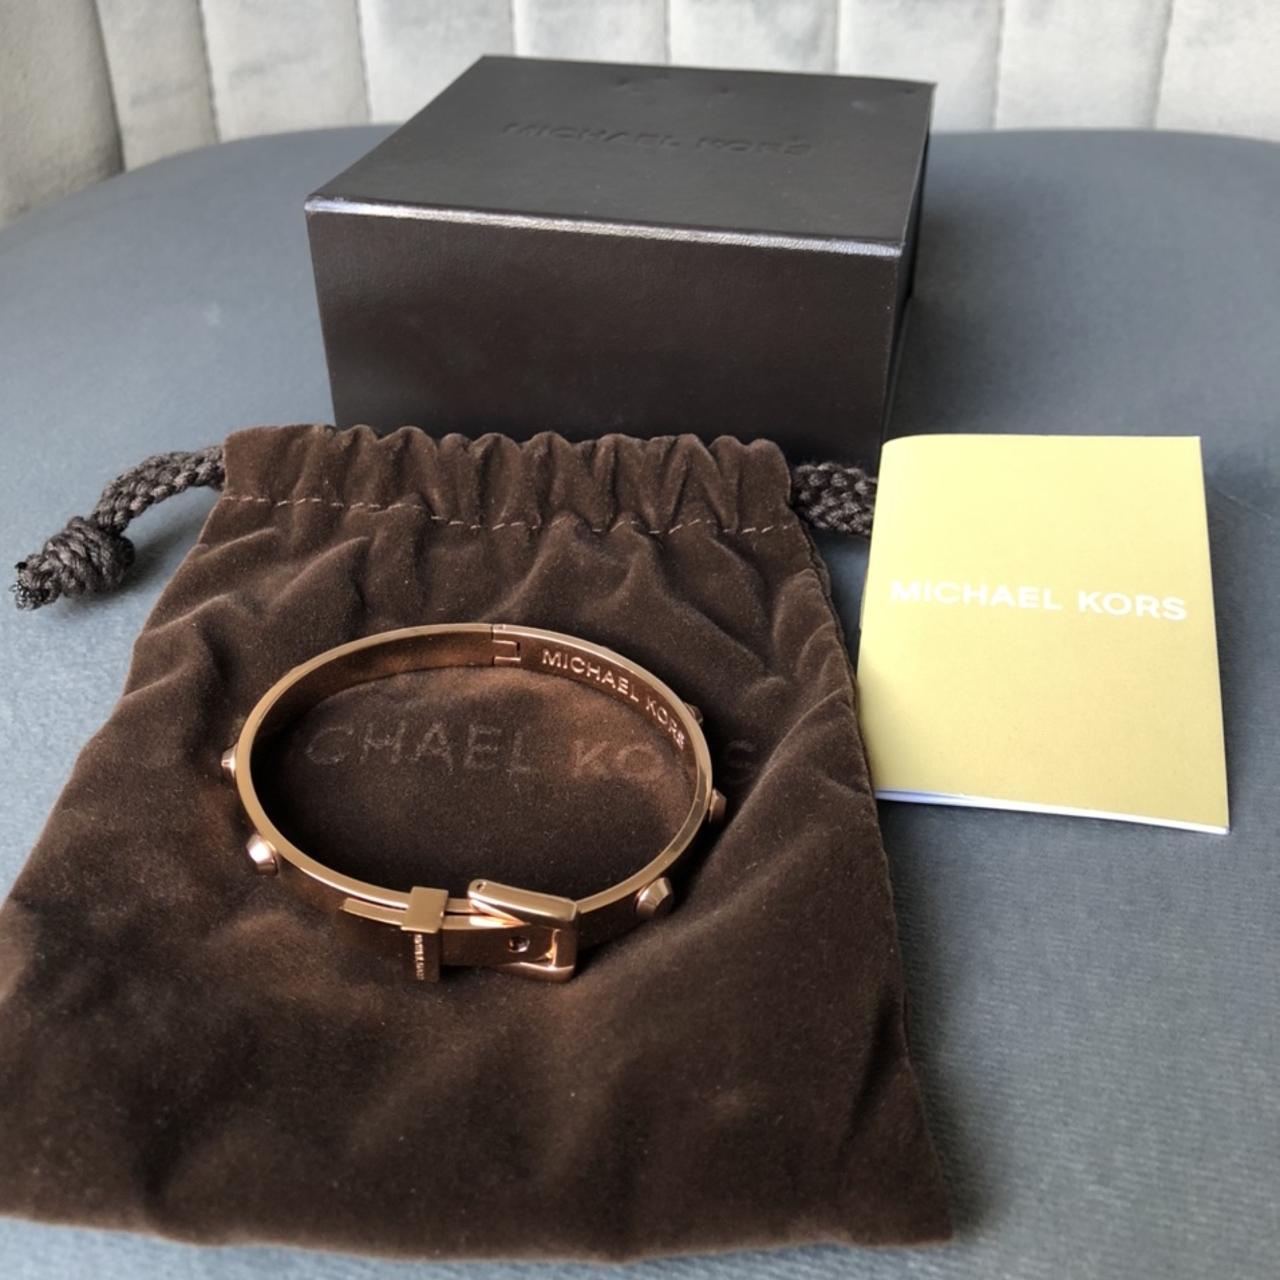 Michael Kors Rose Goldtone Rivet Belt Buckle Articulated Bangle Bracelet   eBay